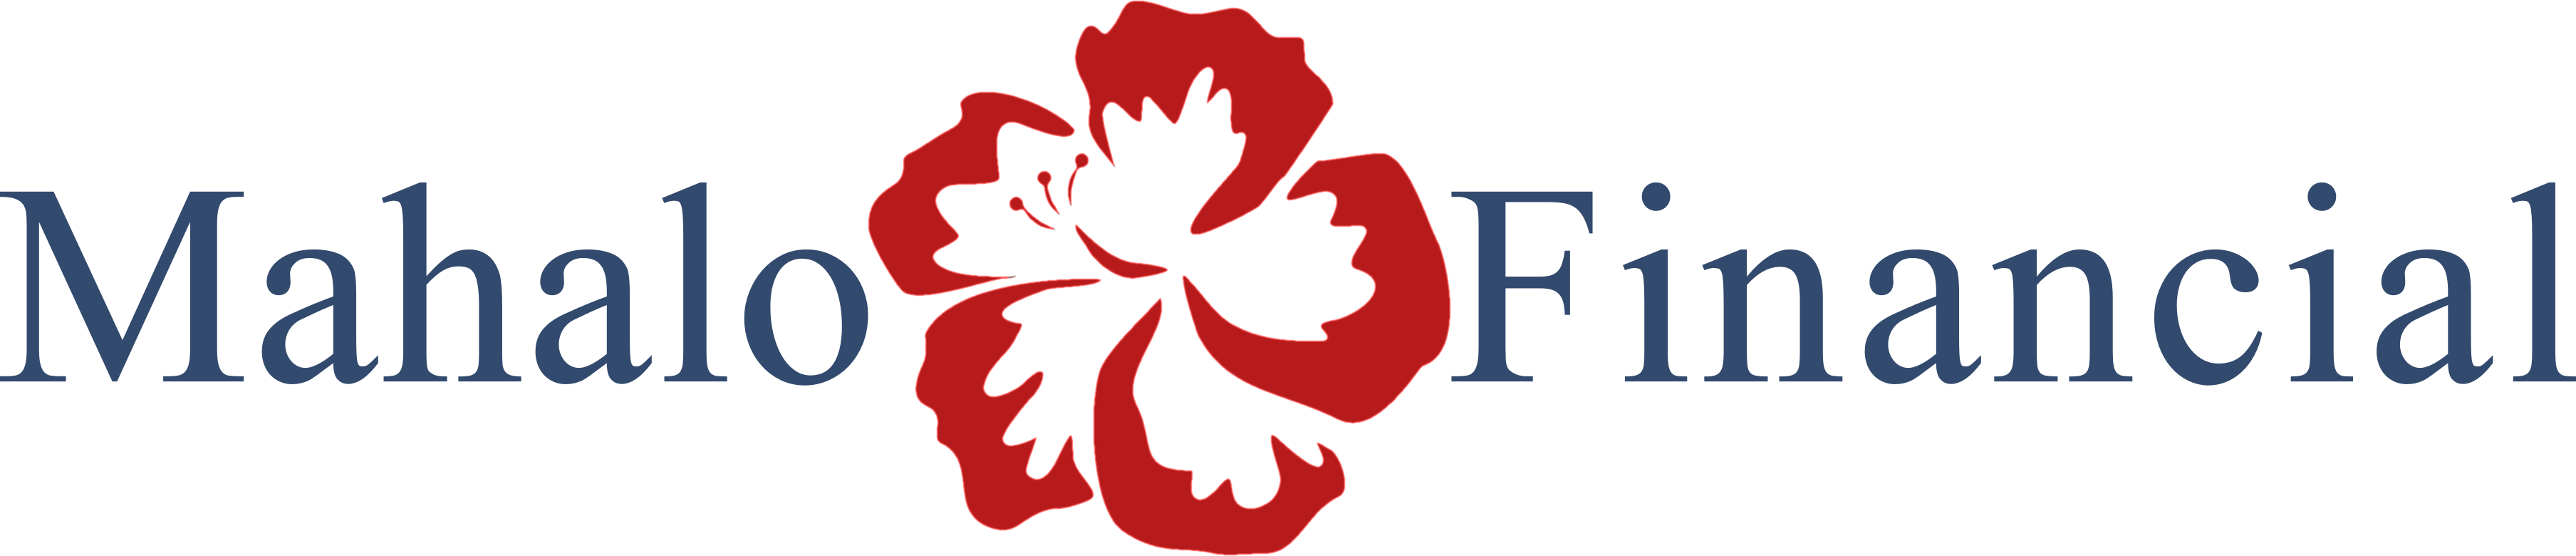 Mahalo Financial logo.